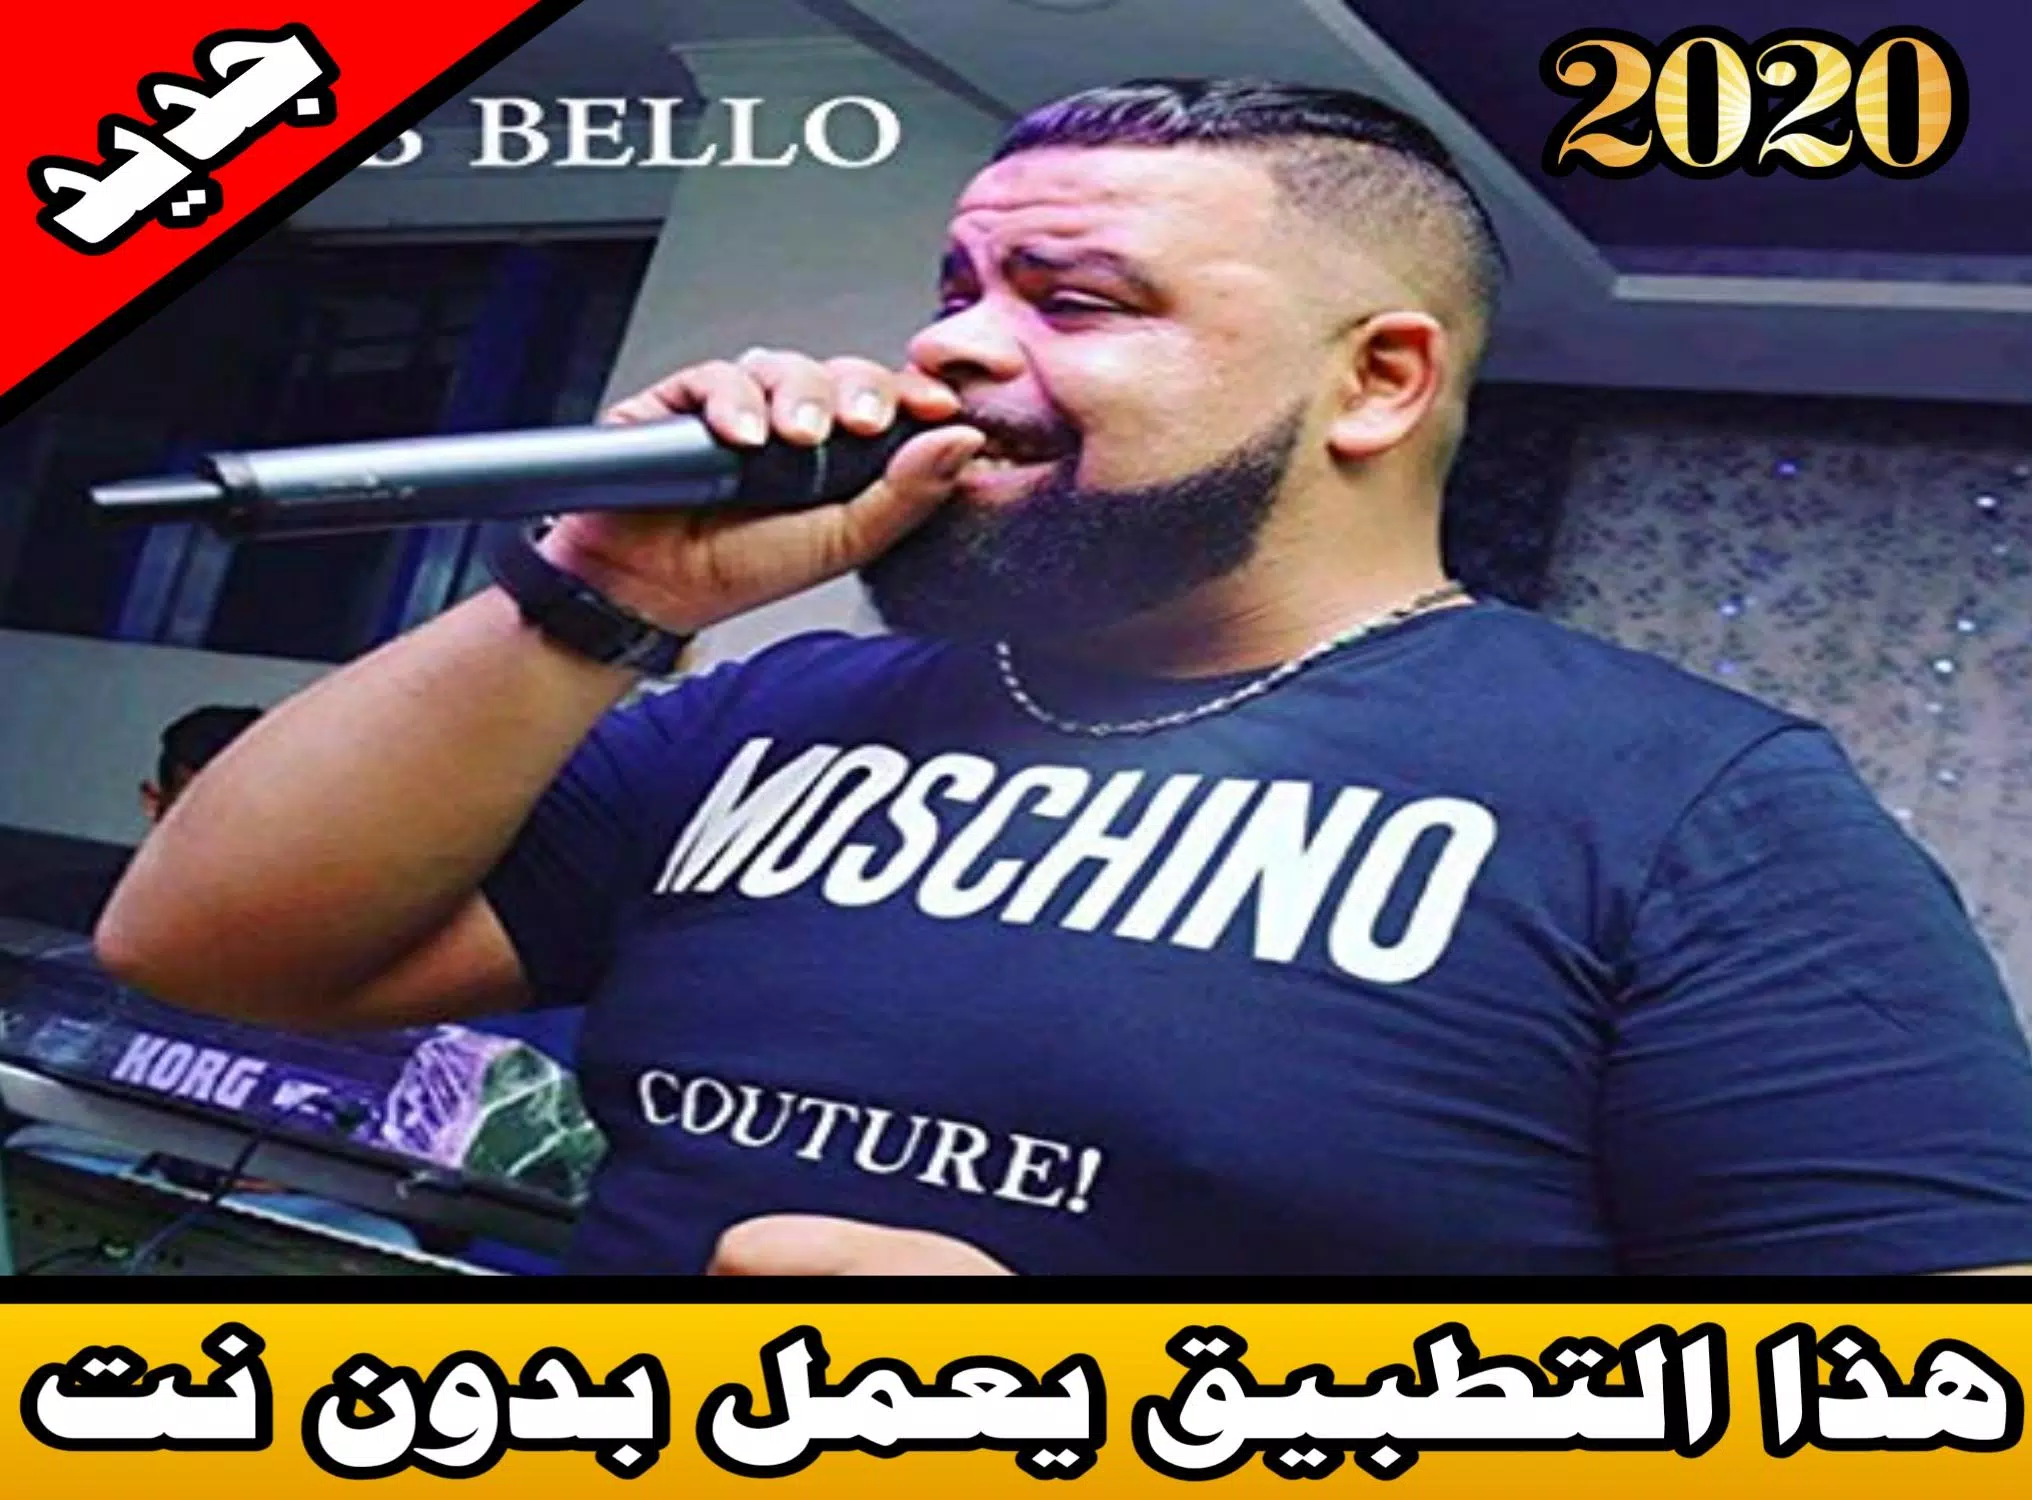 أغاني الشاب بيلو بدون نت 2020| cheb bello mp3 APK for Android Download